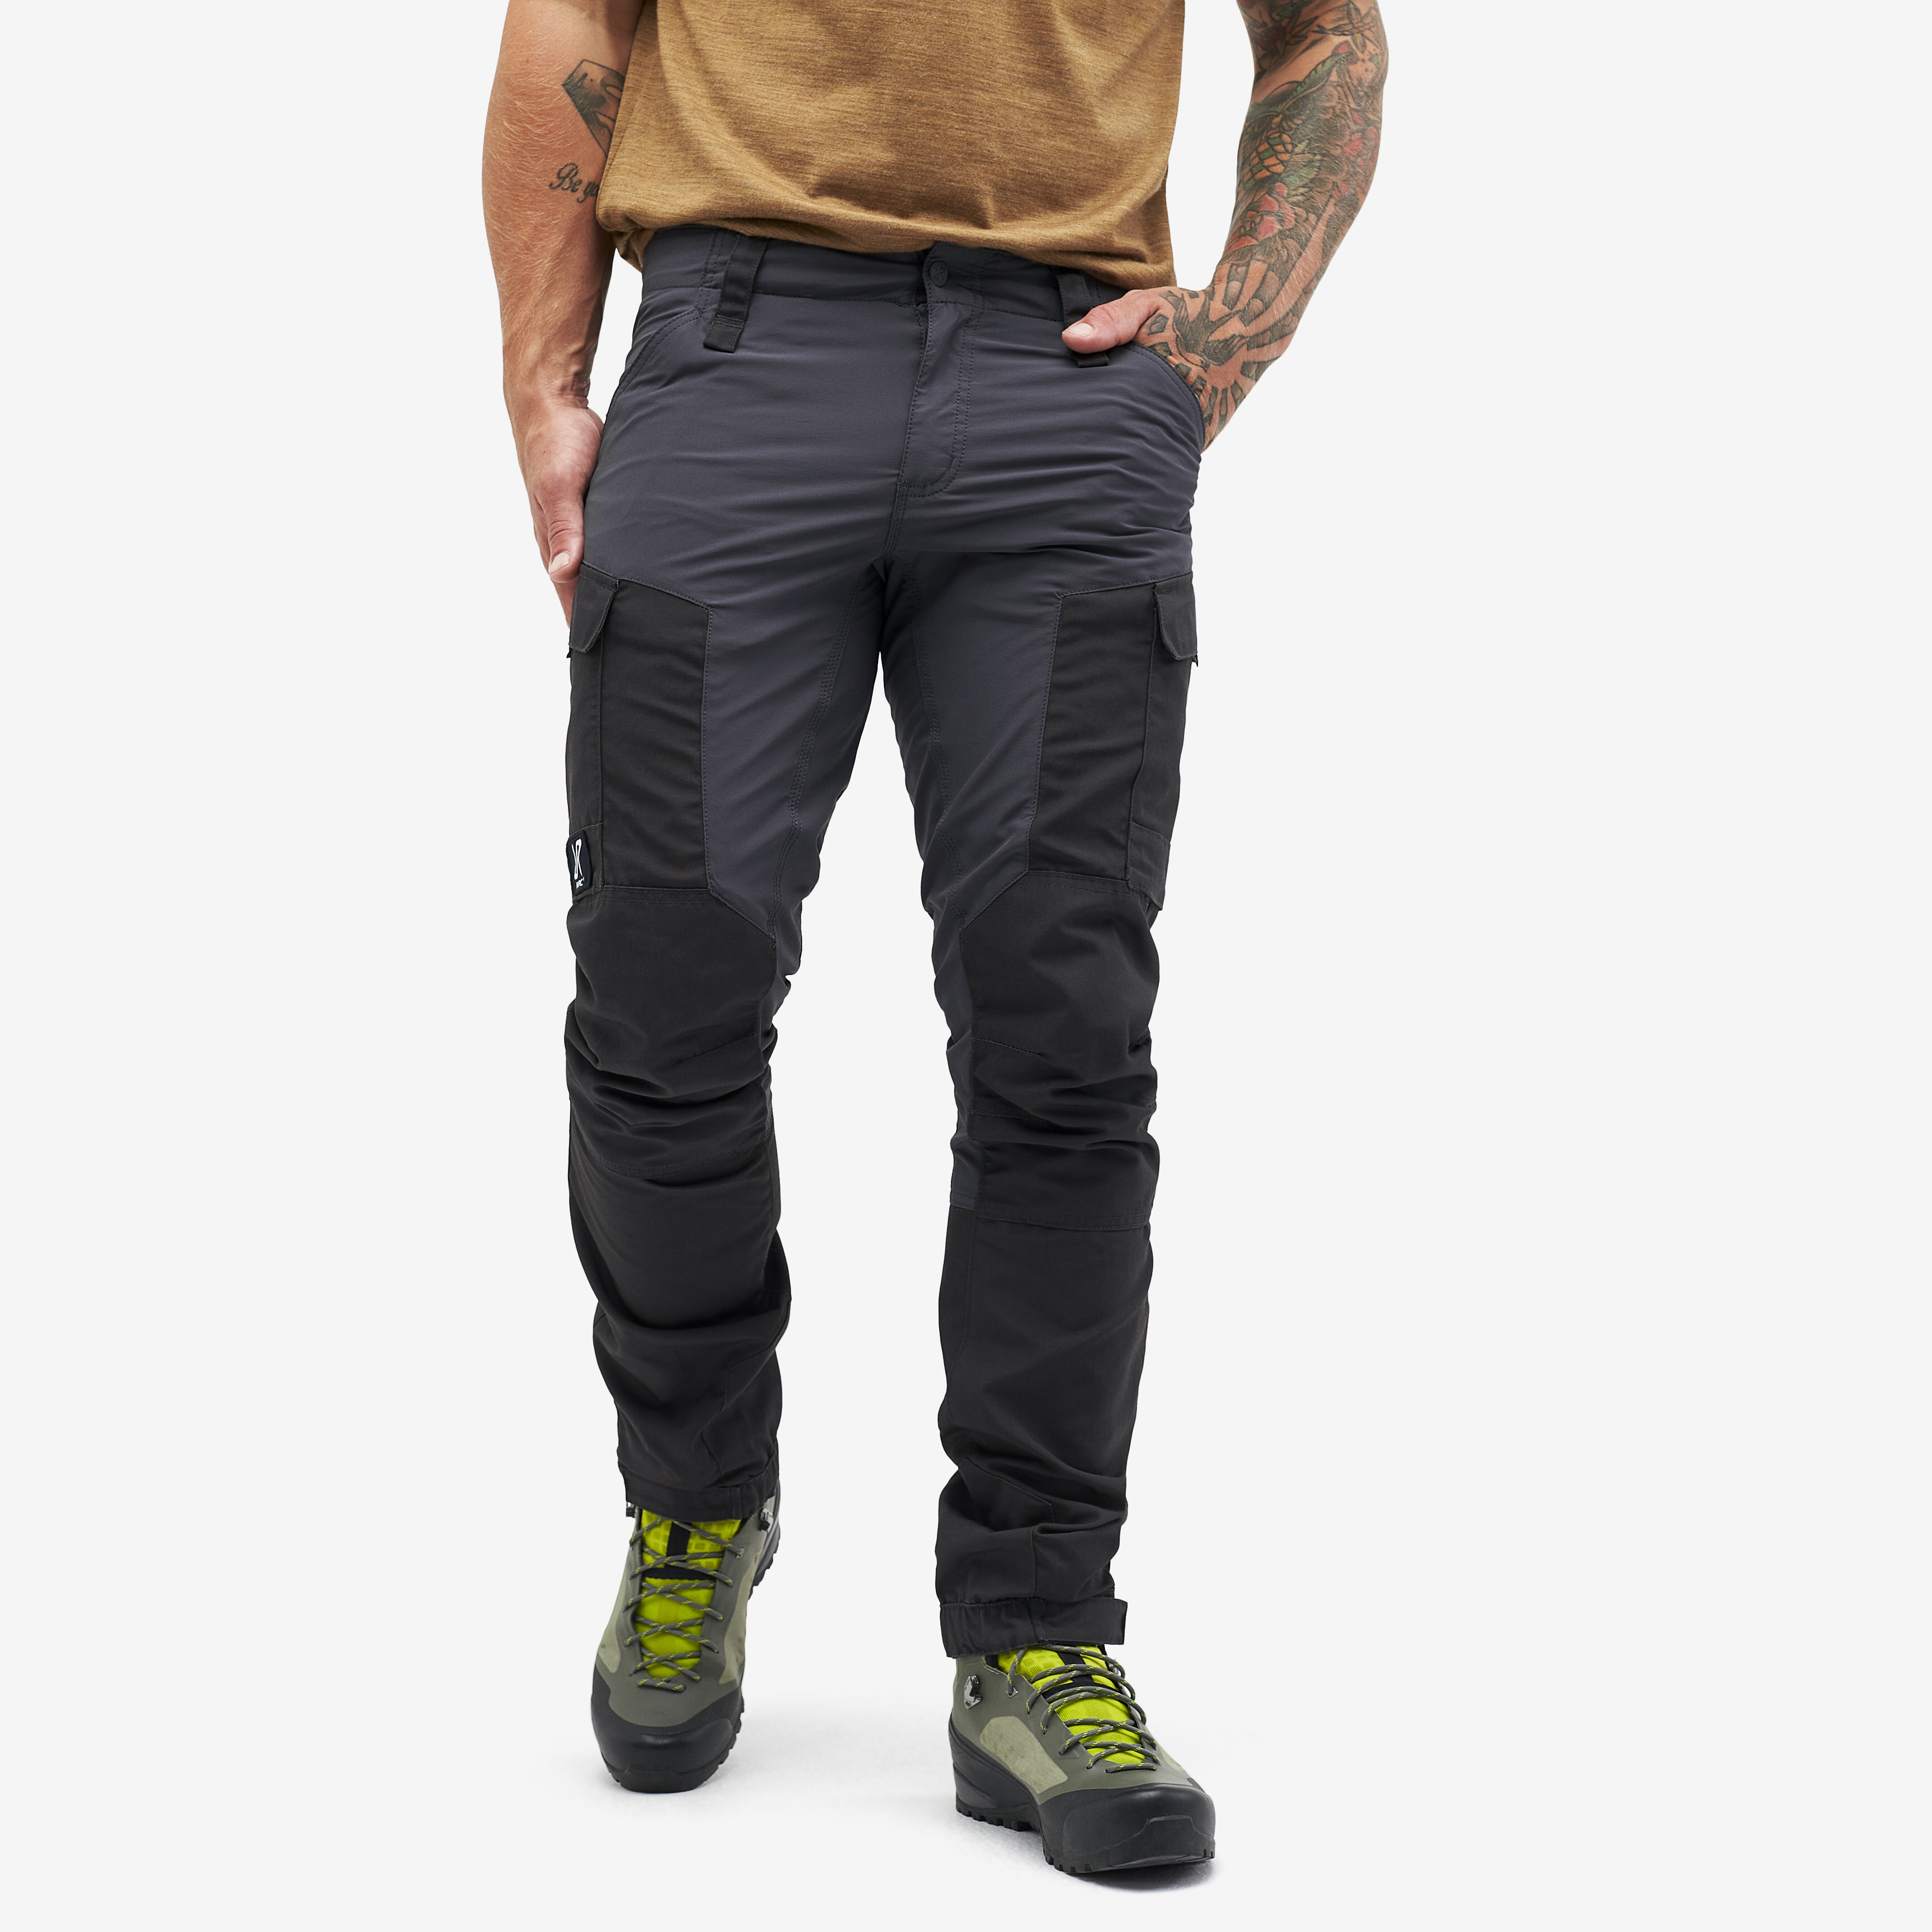 RVRC GP outdoor pants for men in dark grey